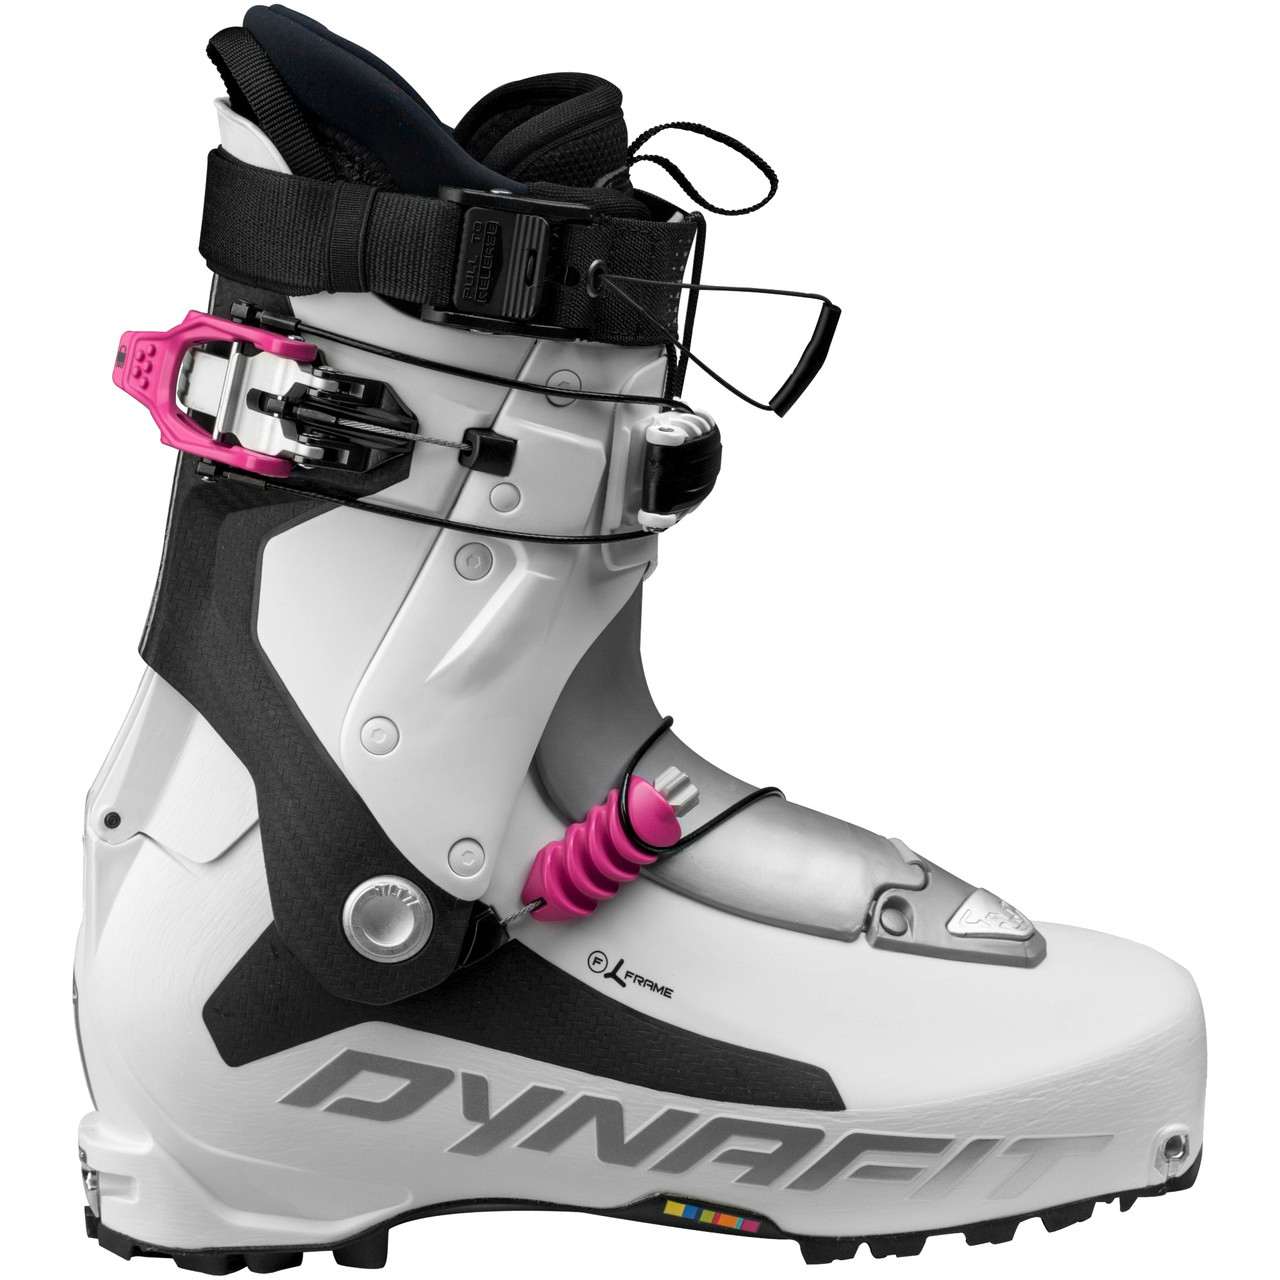 TLT7 Expedition CR Ski Boots White/Fuchsia